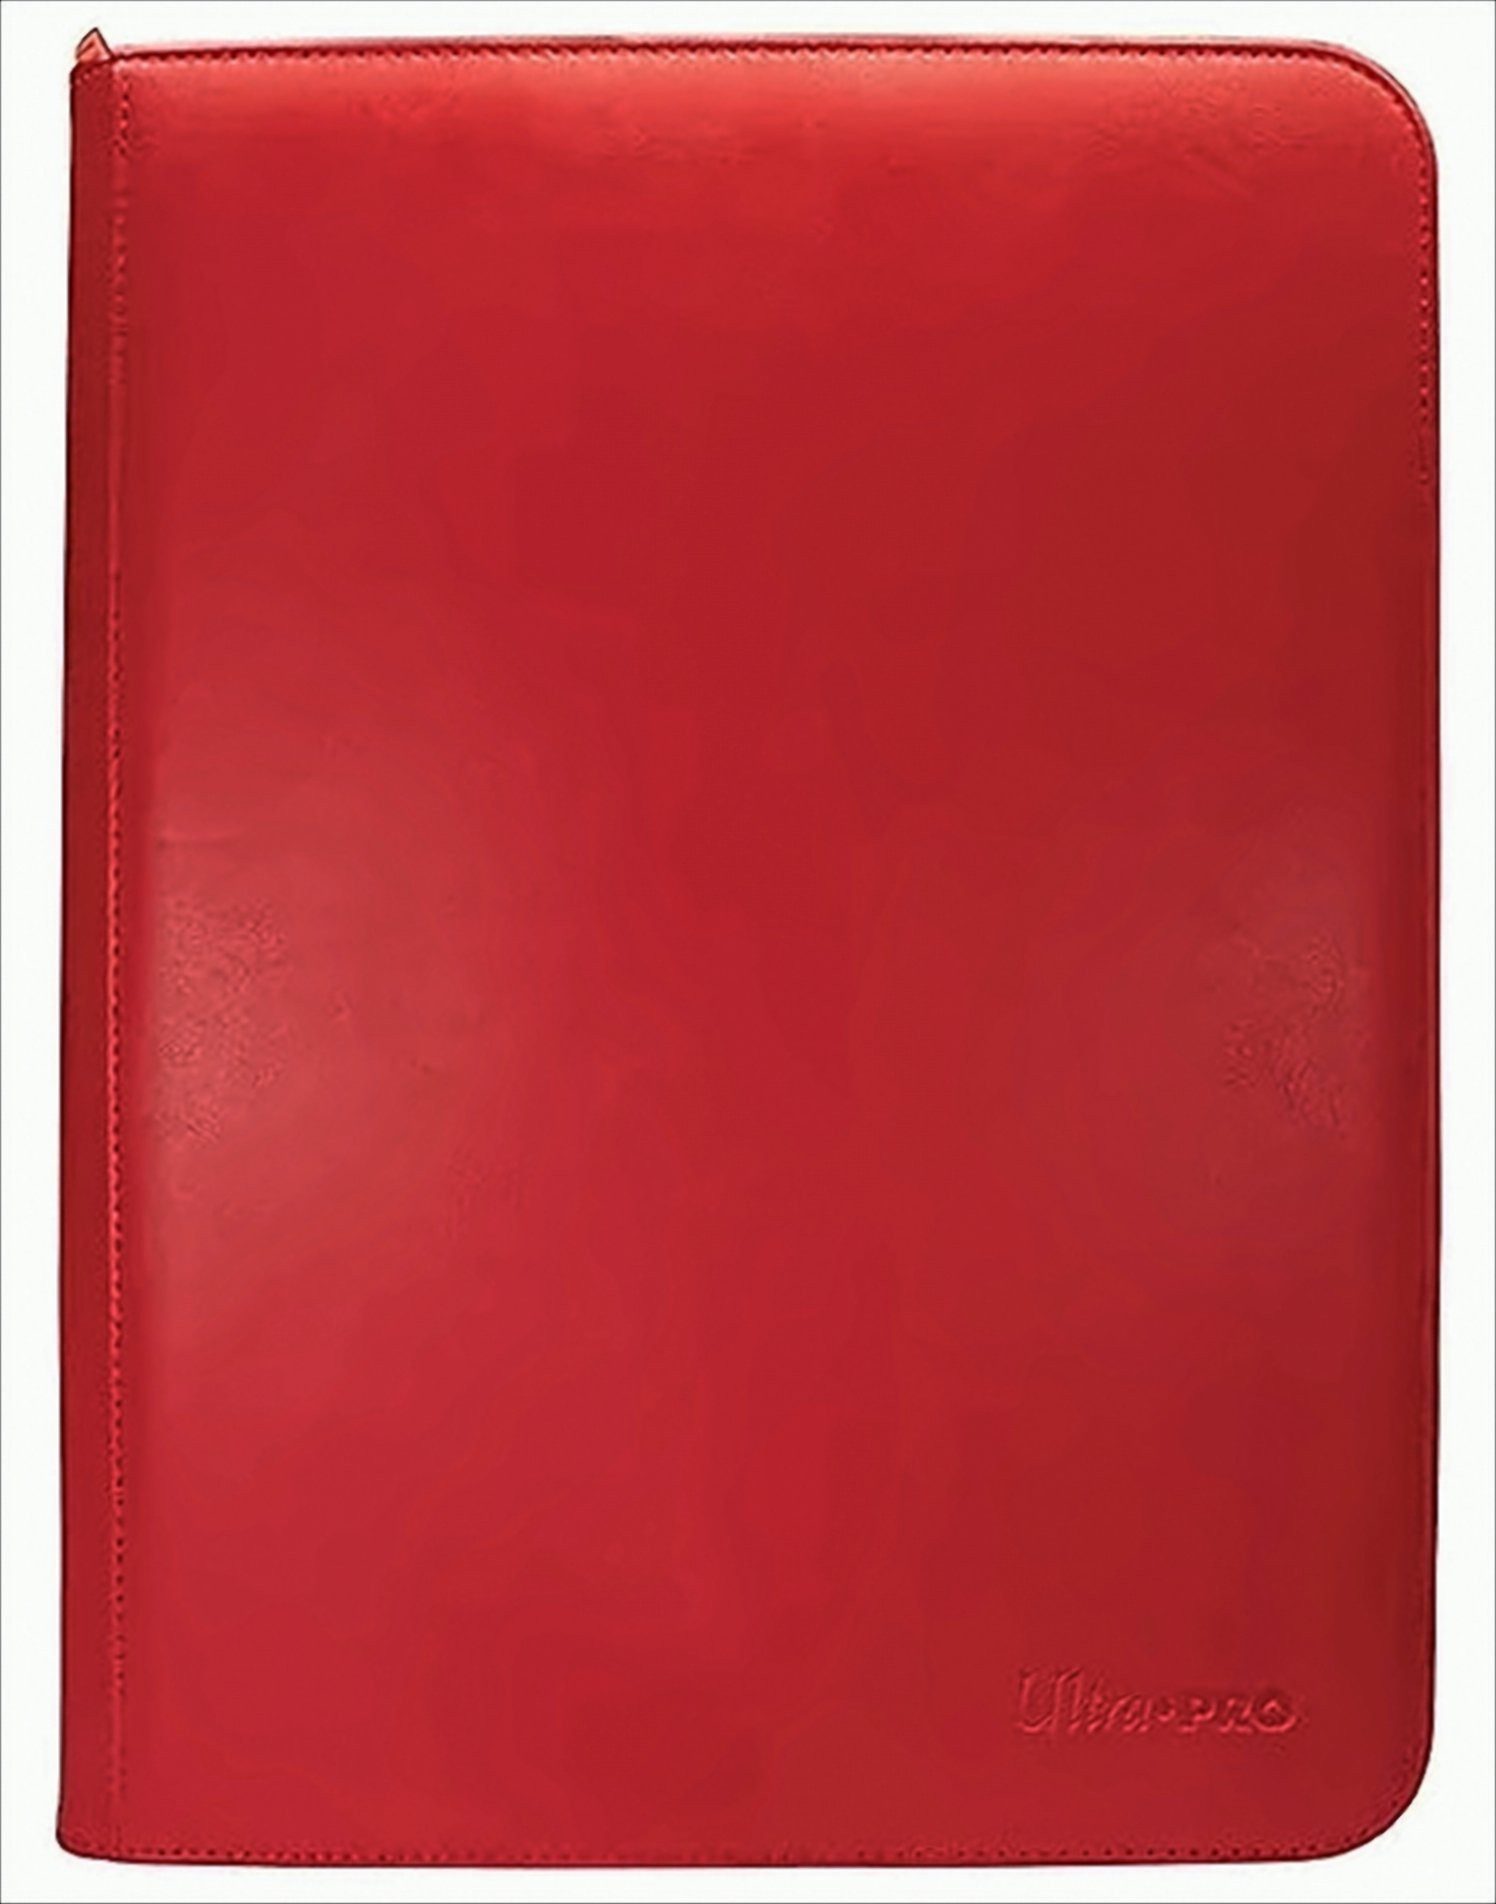 Ultra Pro Sammelkarte UP 9-Pocket Zippered-Pro-Binder - Red